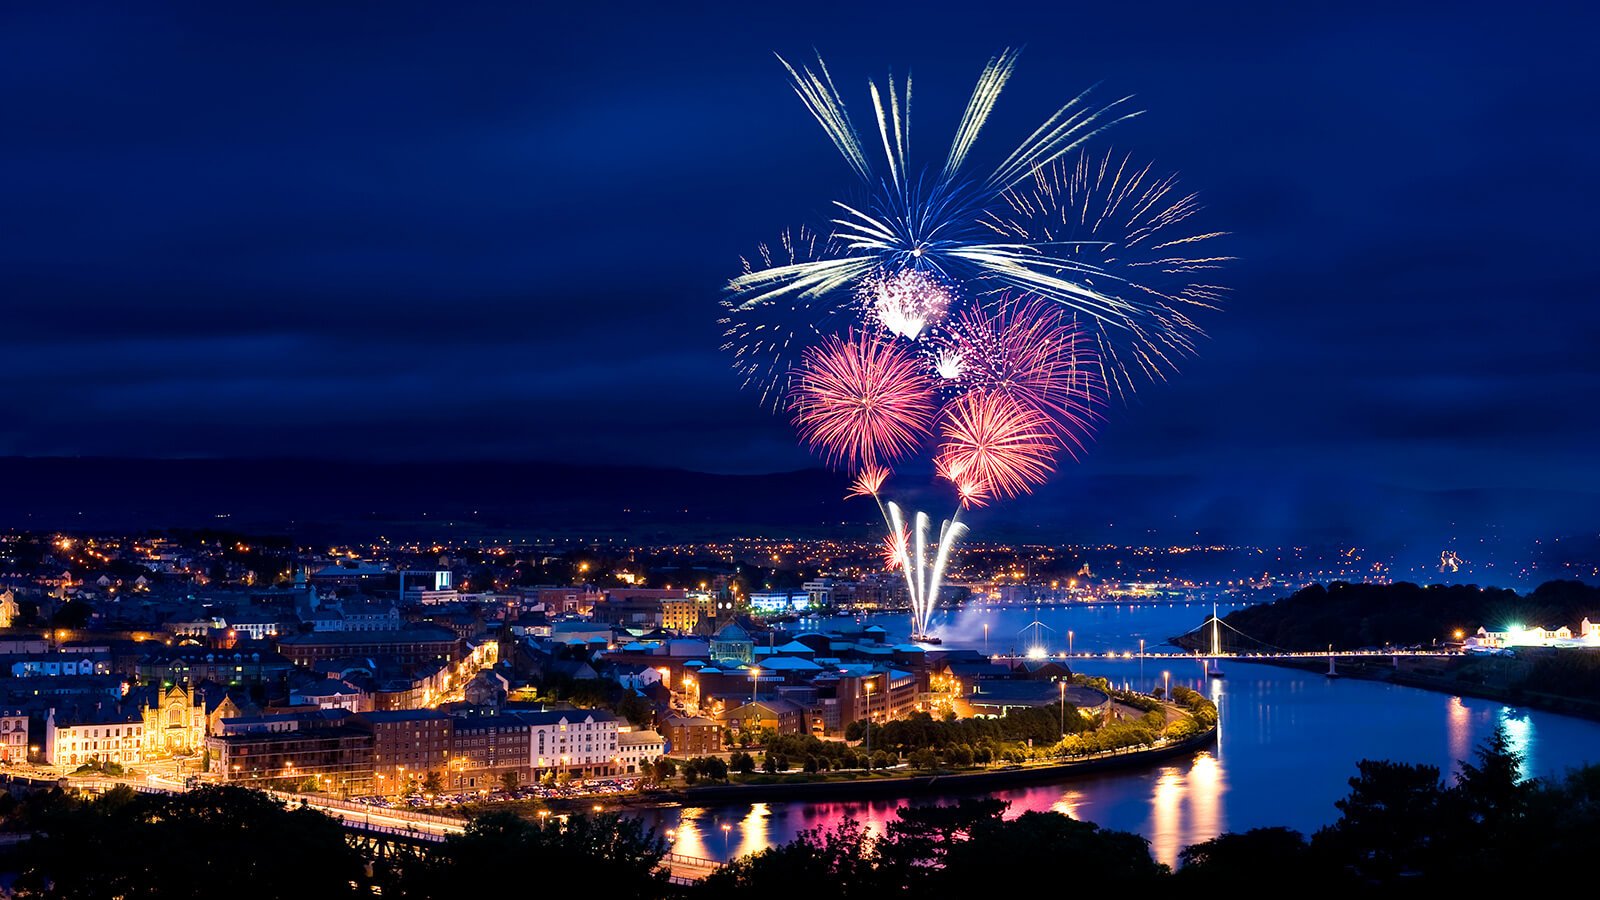 Foyle Derry fireworks in Ireland at Halloween